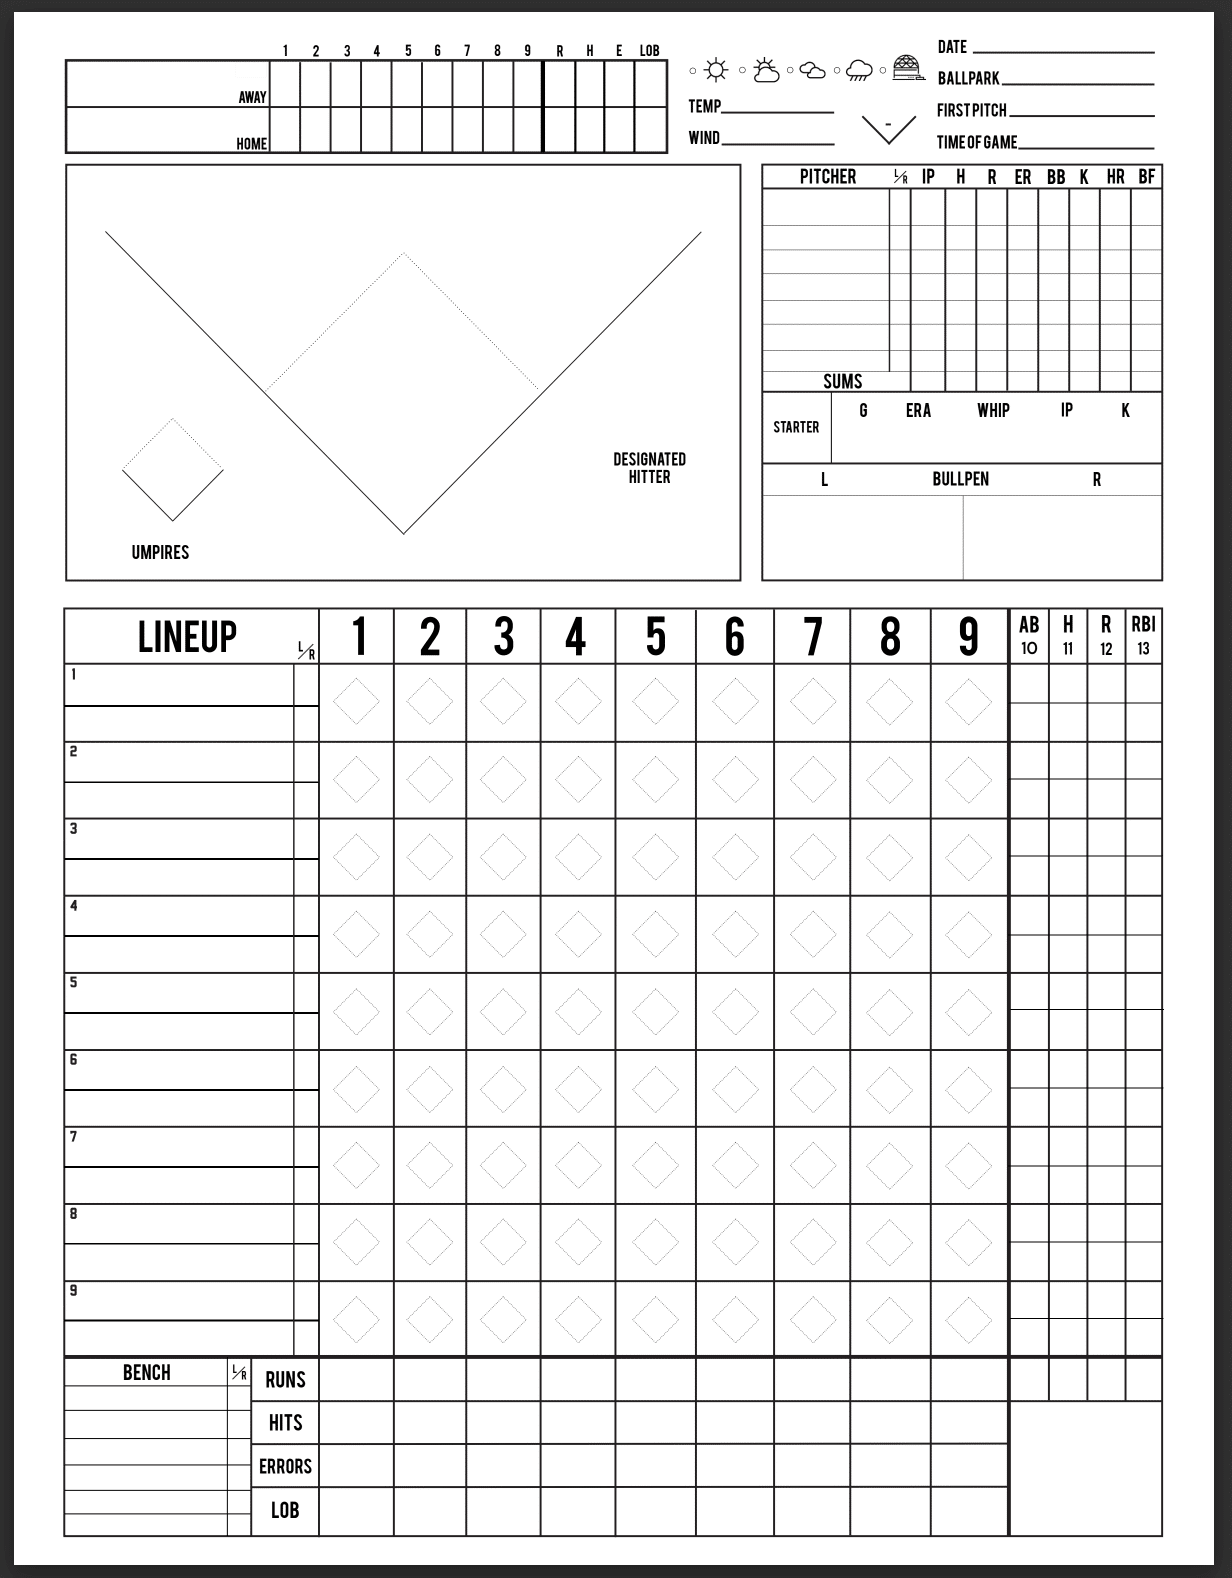 Hilty baseball scorecard, 1st page.